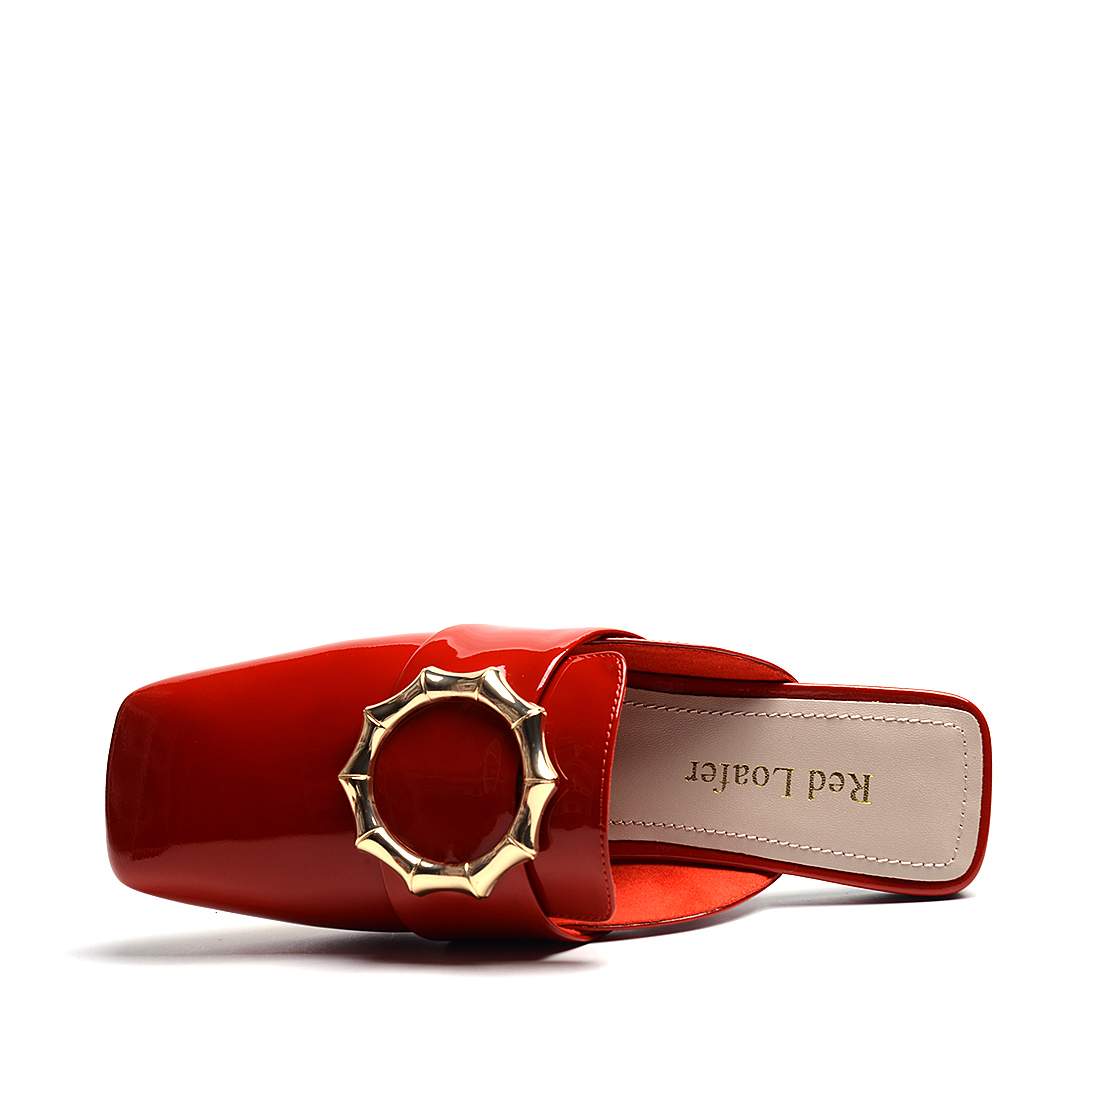 [RedLoafer]欧美风金属装饰牛漆皮革拖鞋(尺码标准)
编号：A3878T1A76